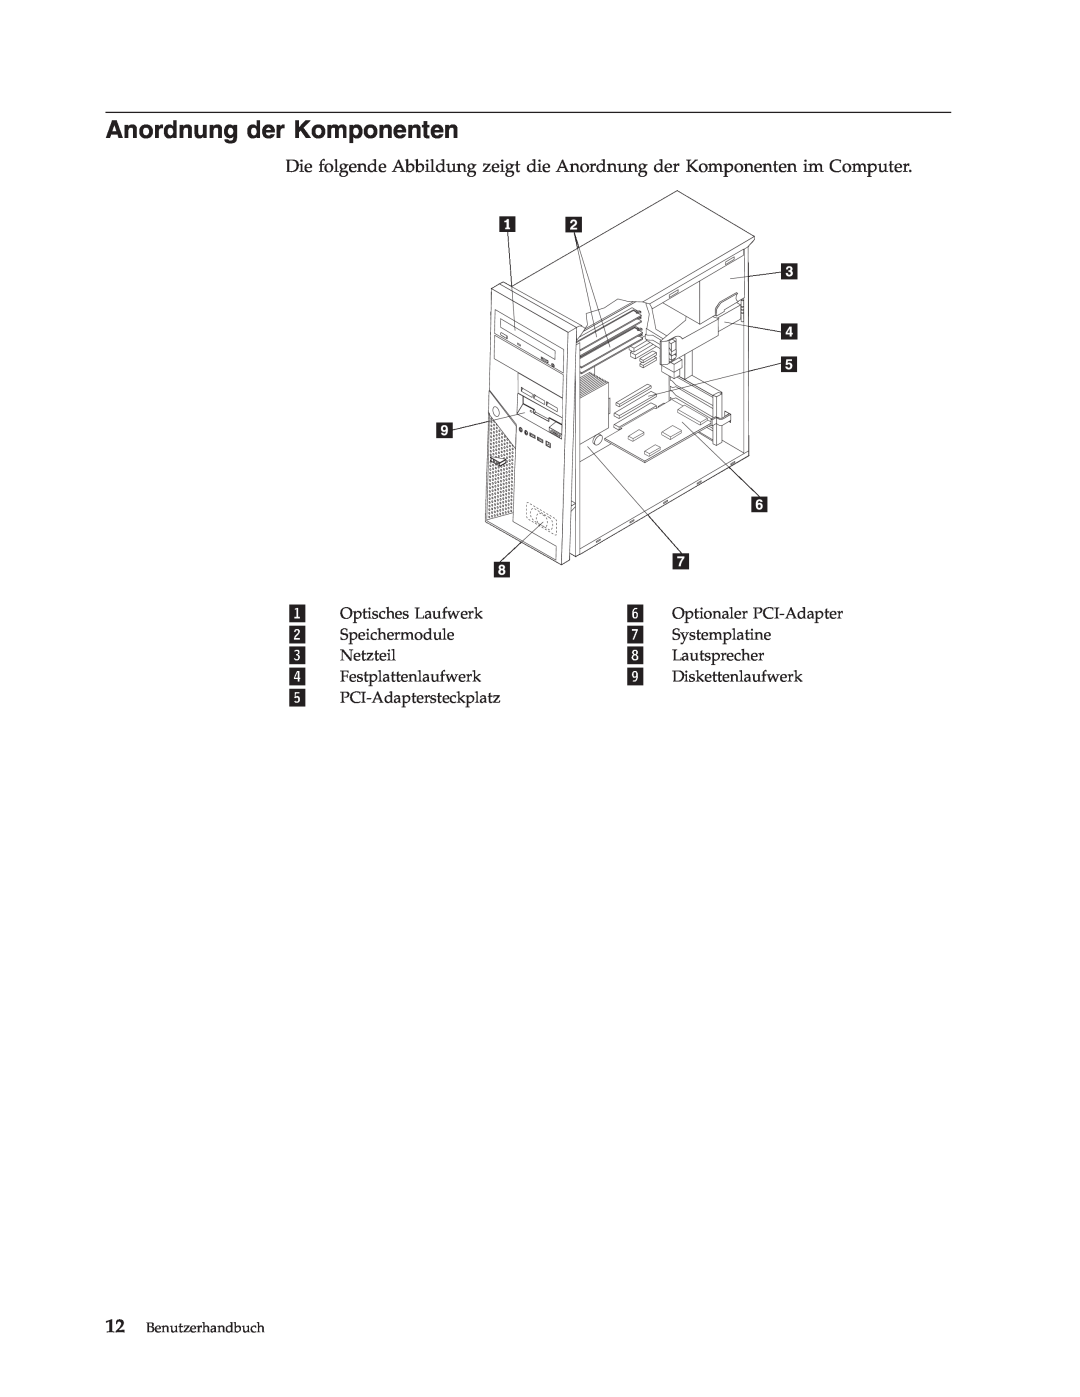 IBM 9212, 9213 manual Anordnung der Komponenten, Benutzerhandbuch 